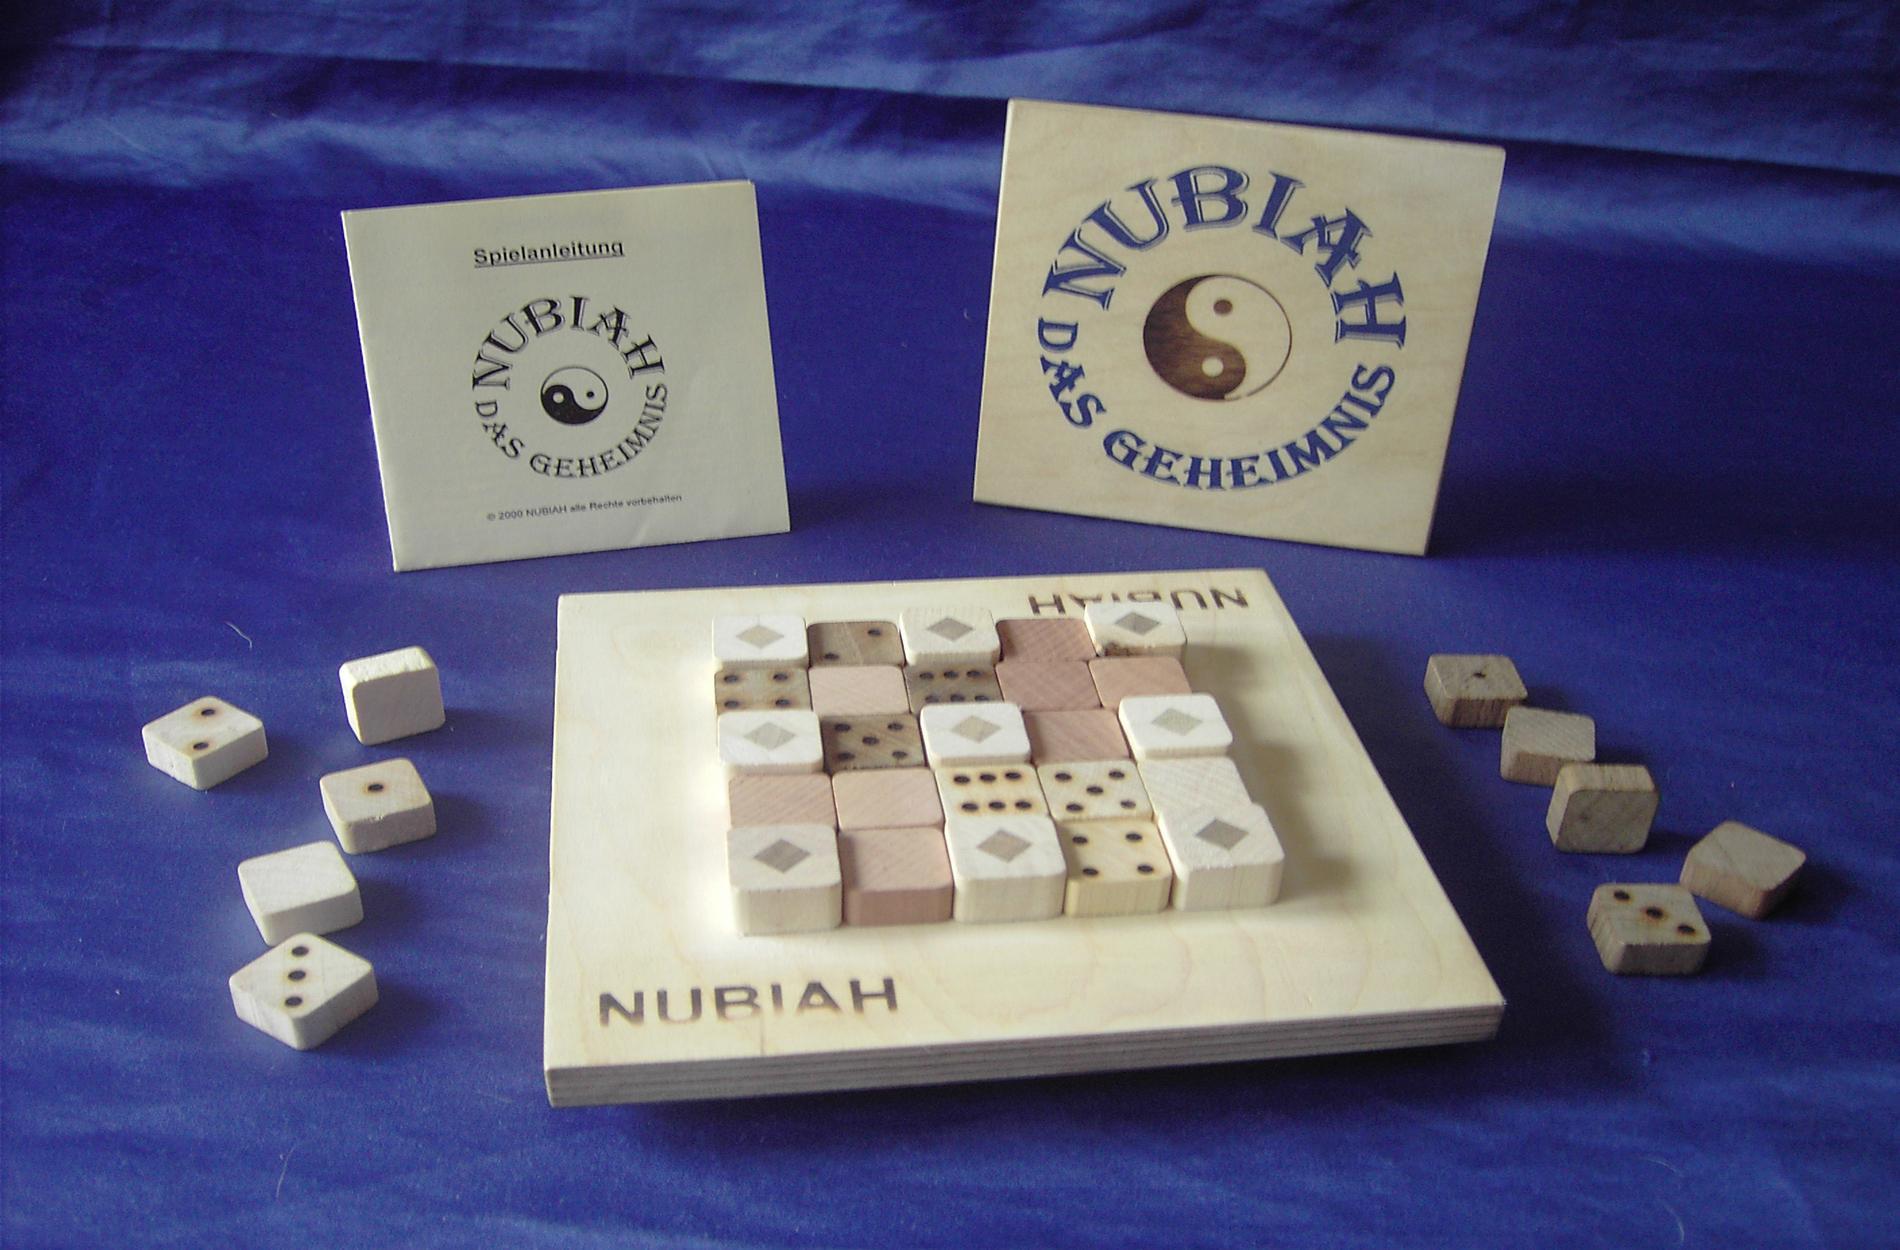 NUBIAH - das Geheimnis - Strategiespiel - spielerisch addieren lernen